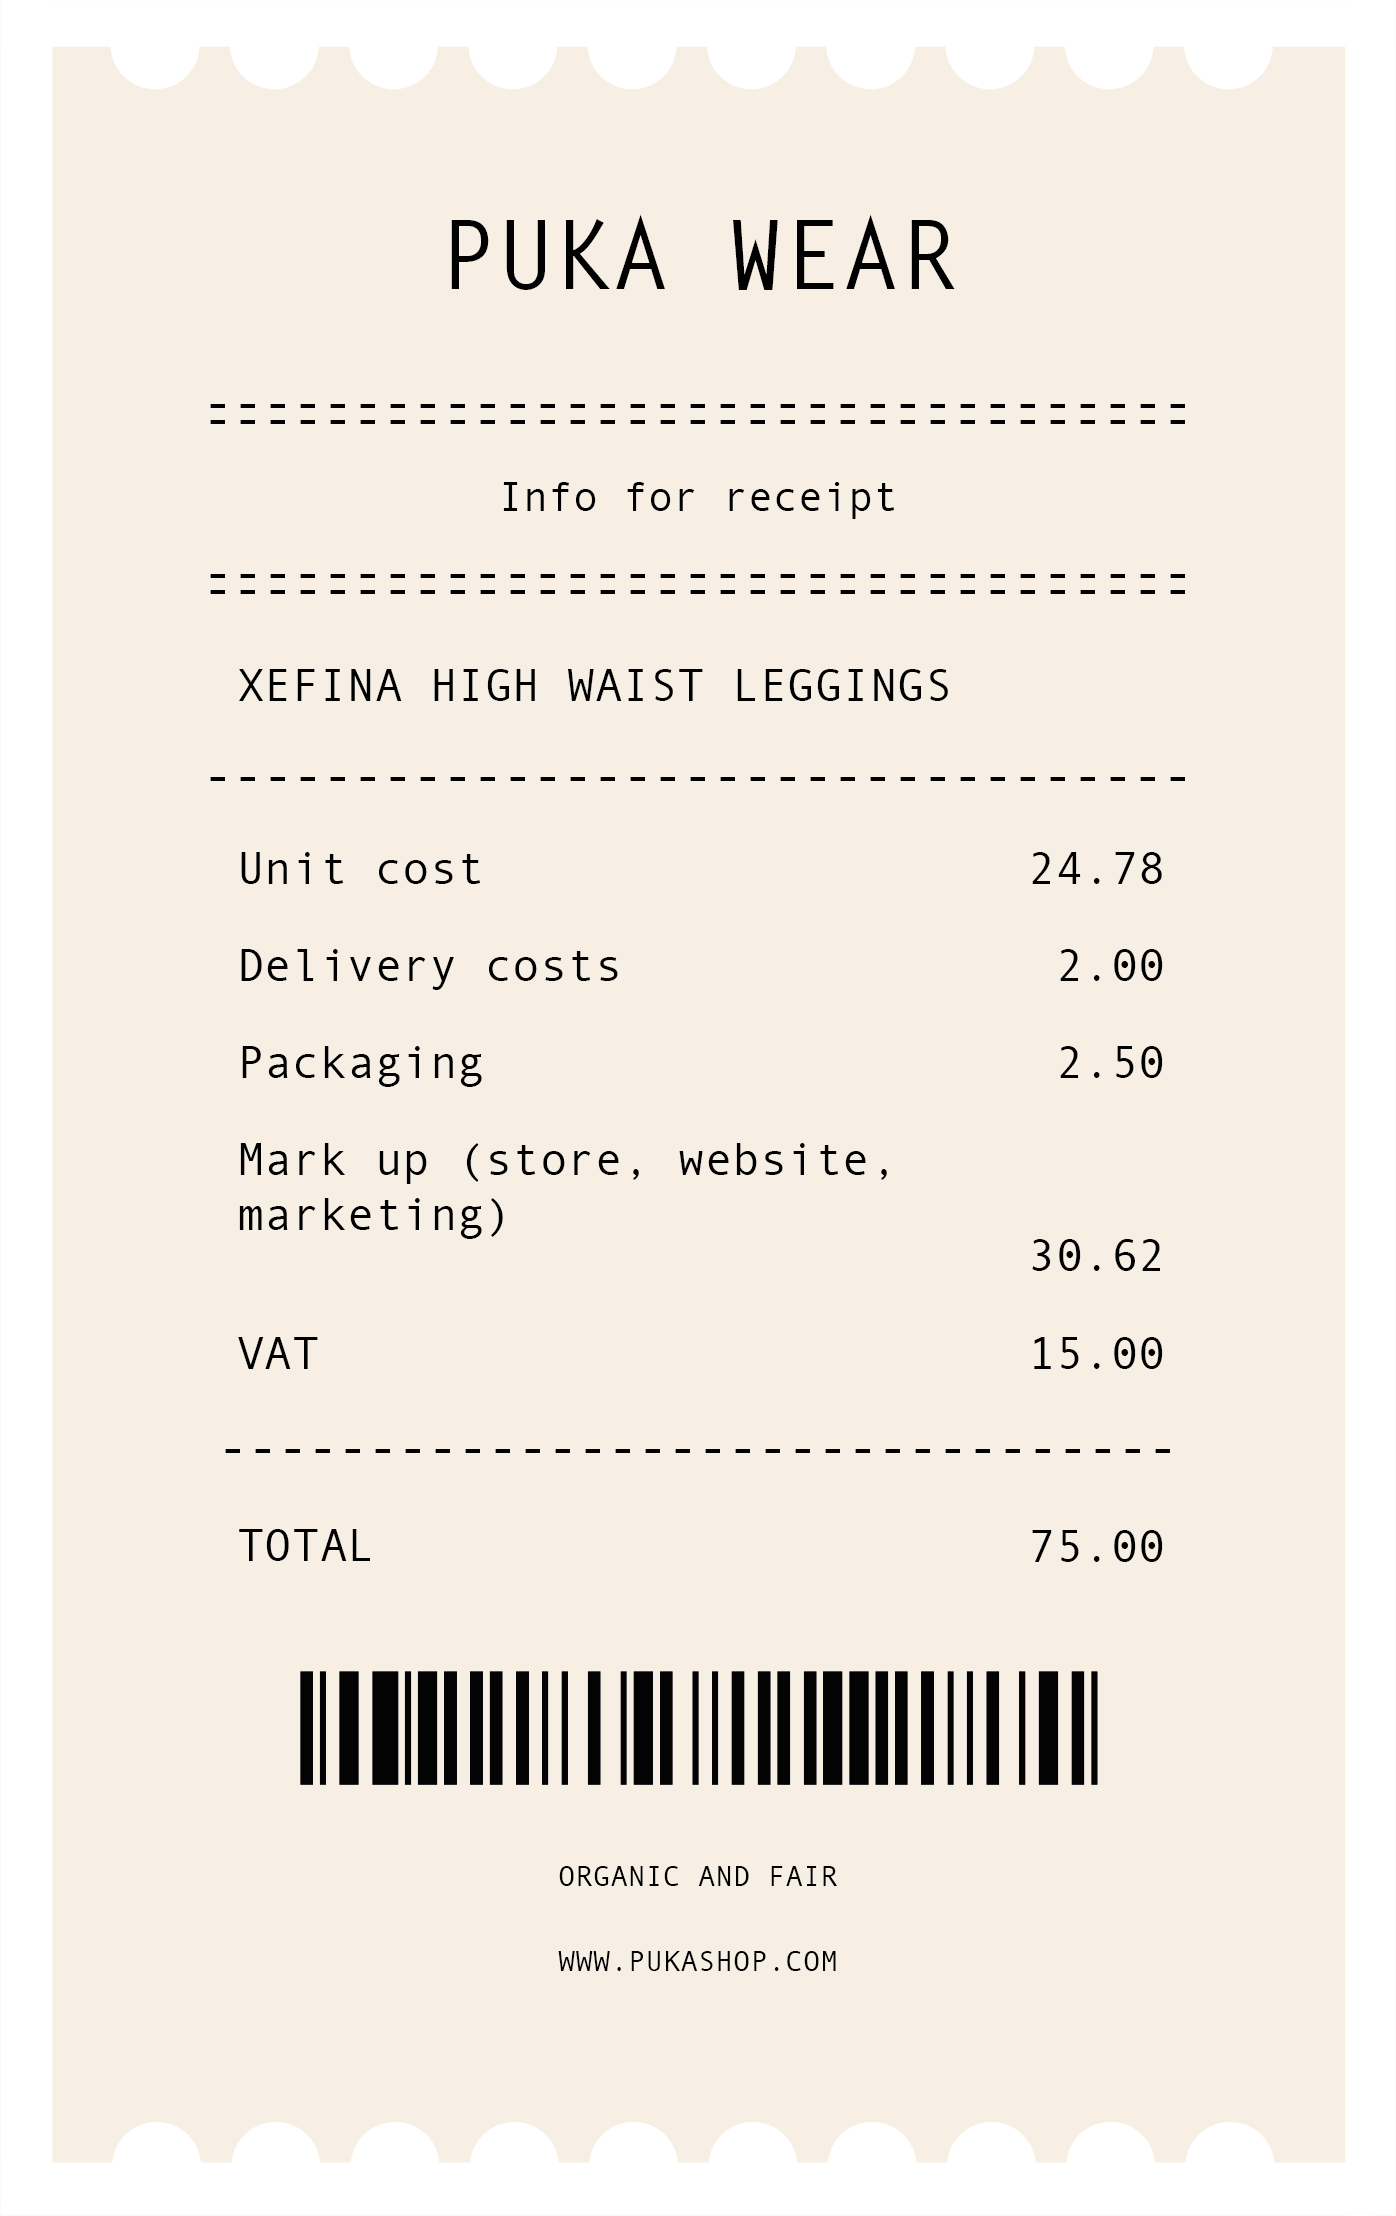 xefina leggings receipt